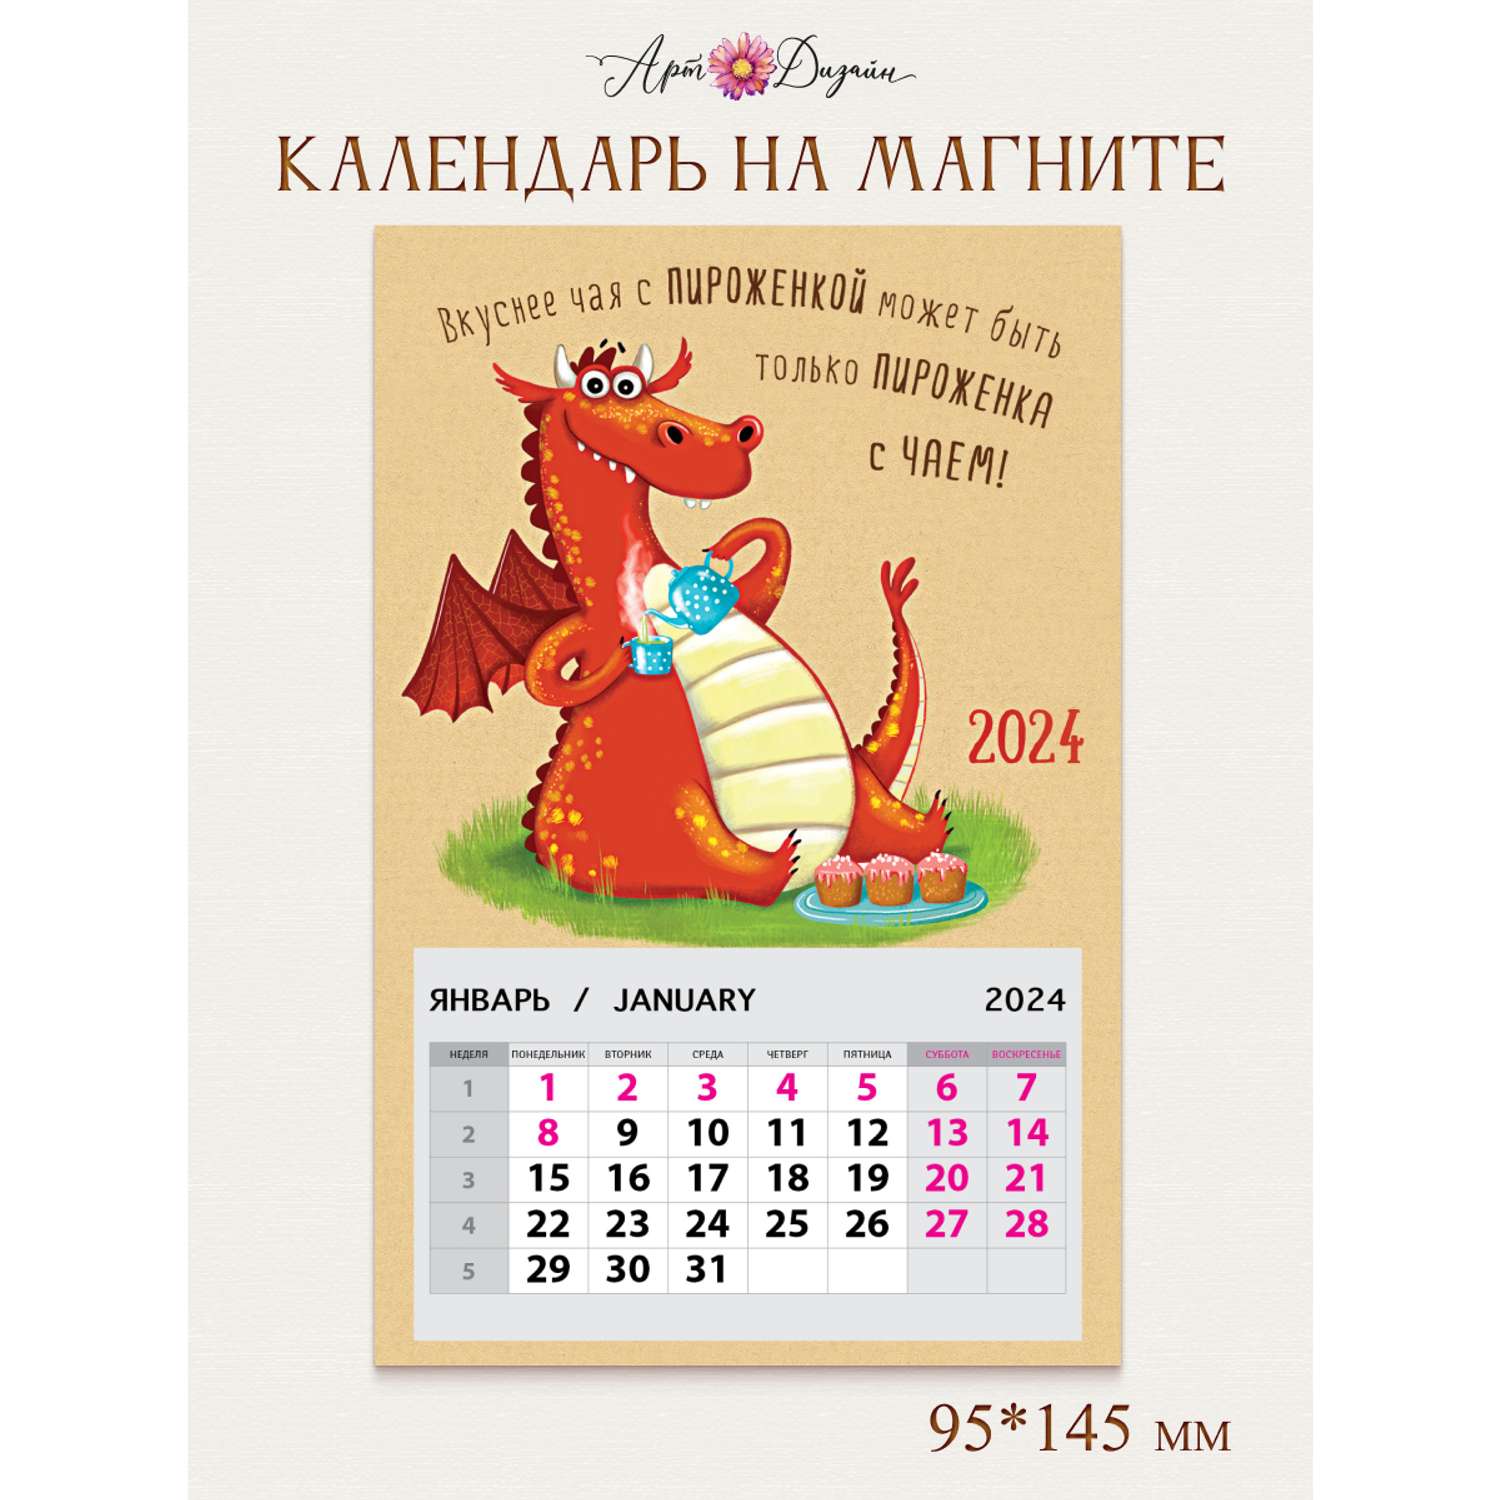 Календарь на магните Арт и Дизайн 0611.052 - фото 1